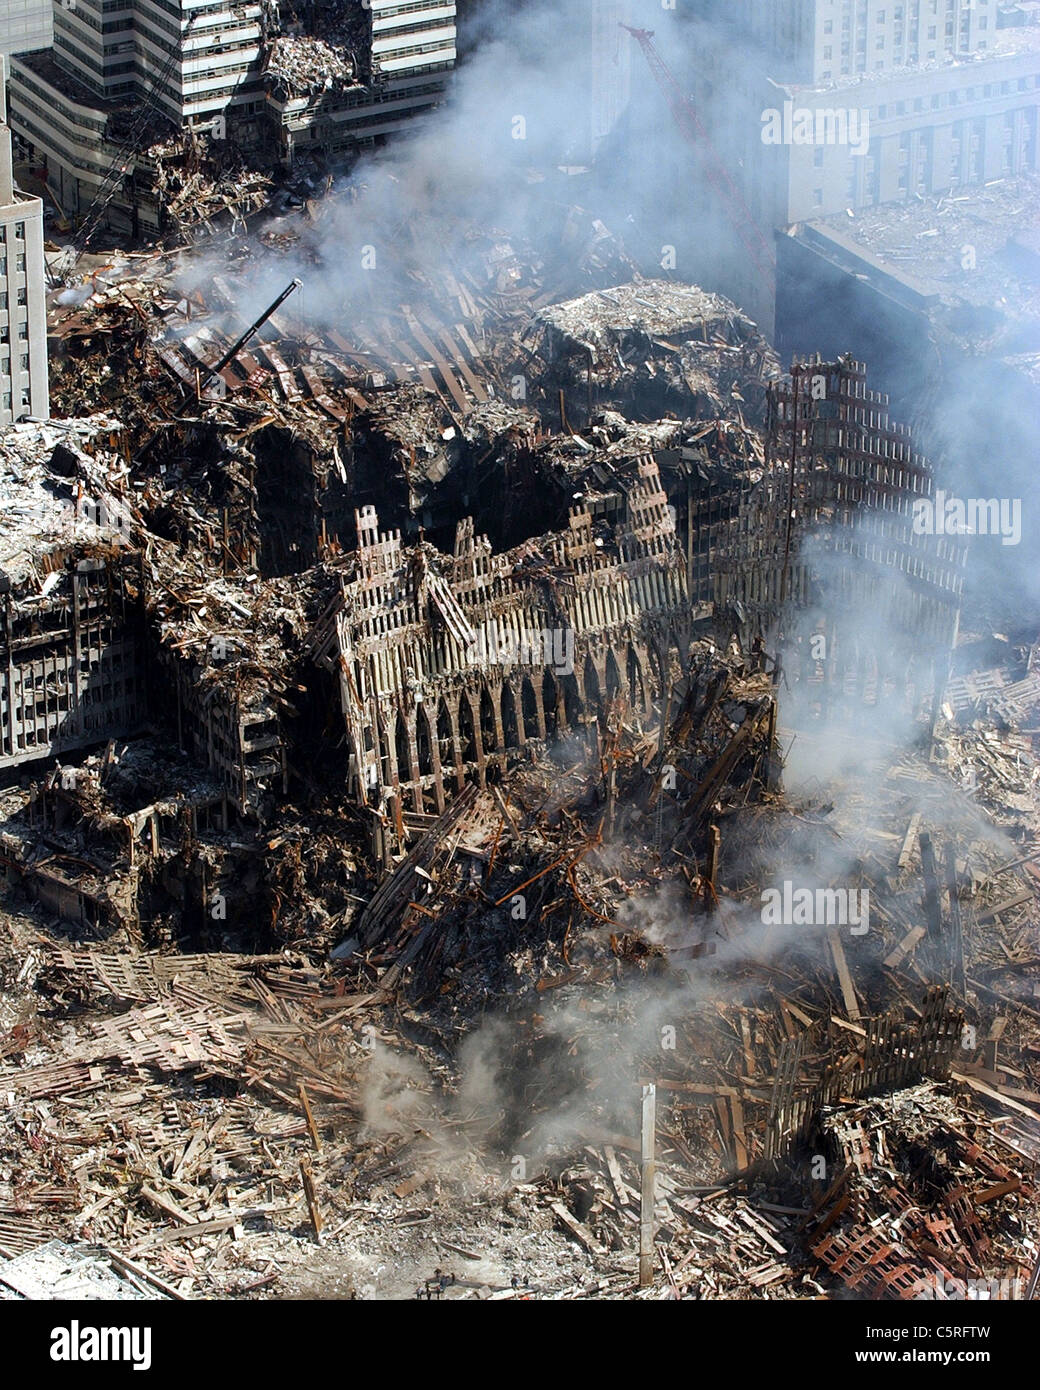 Vue aérienne de ruines fumantes de ground zero, le World Trade Center après le 911 attaques terroristes Banque D'Images